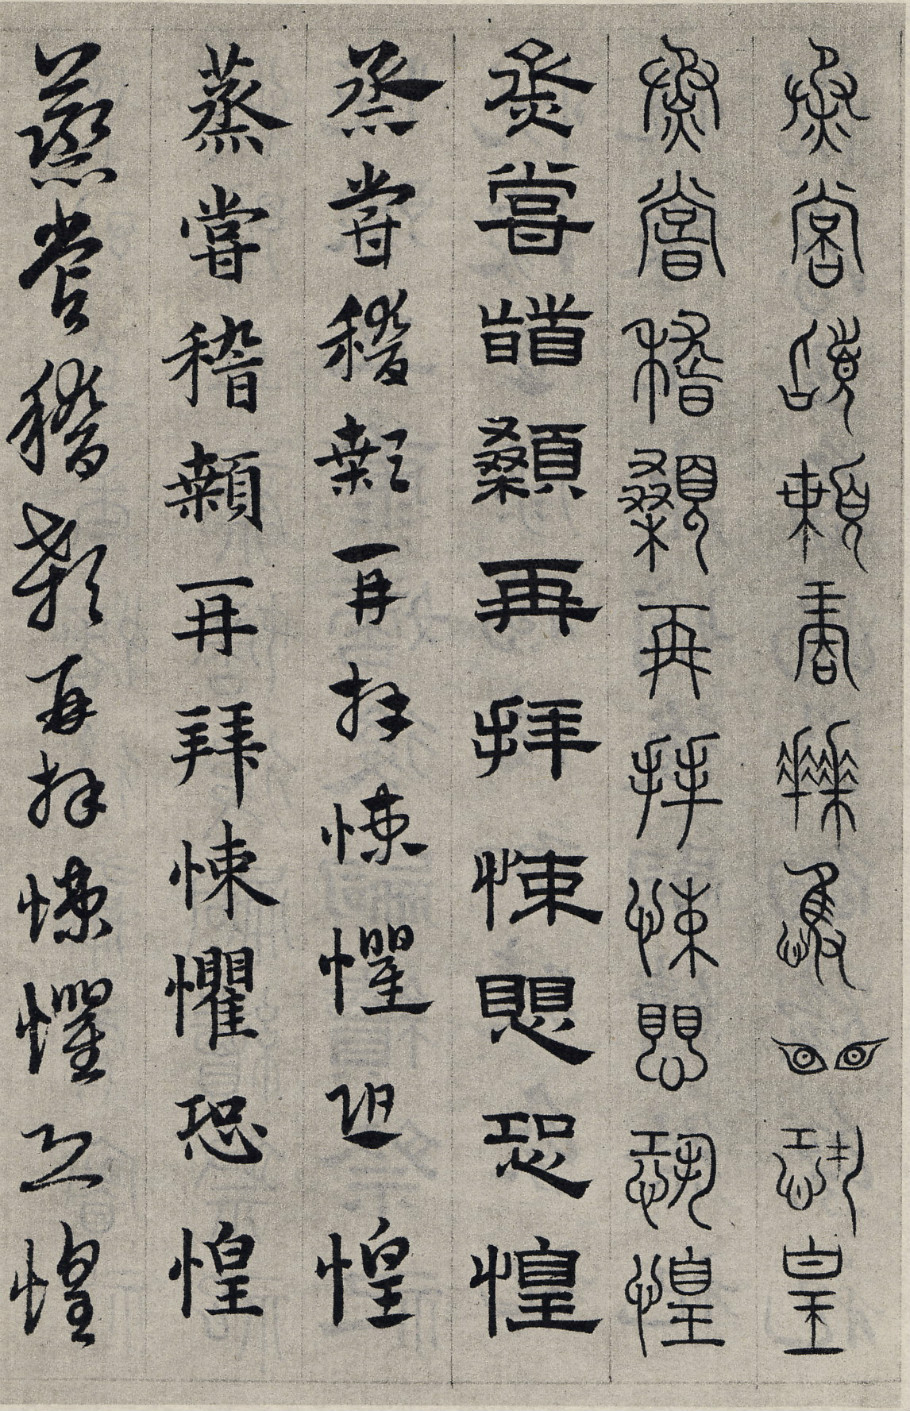 赵子昂写的六种千字文,草书行书楷书篆书隶书各体都有